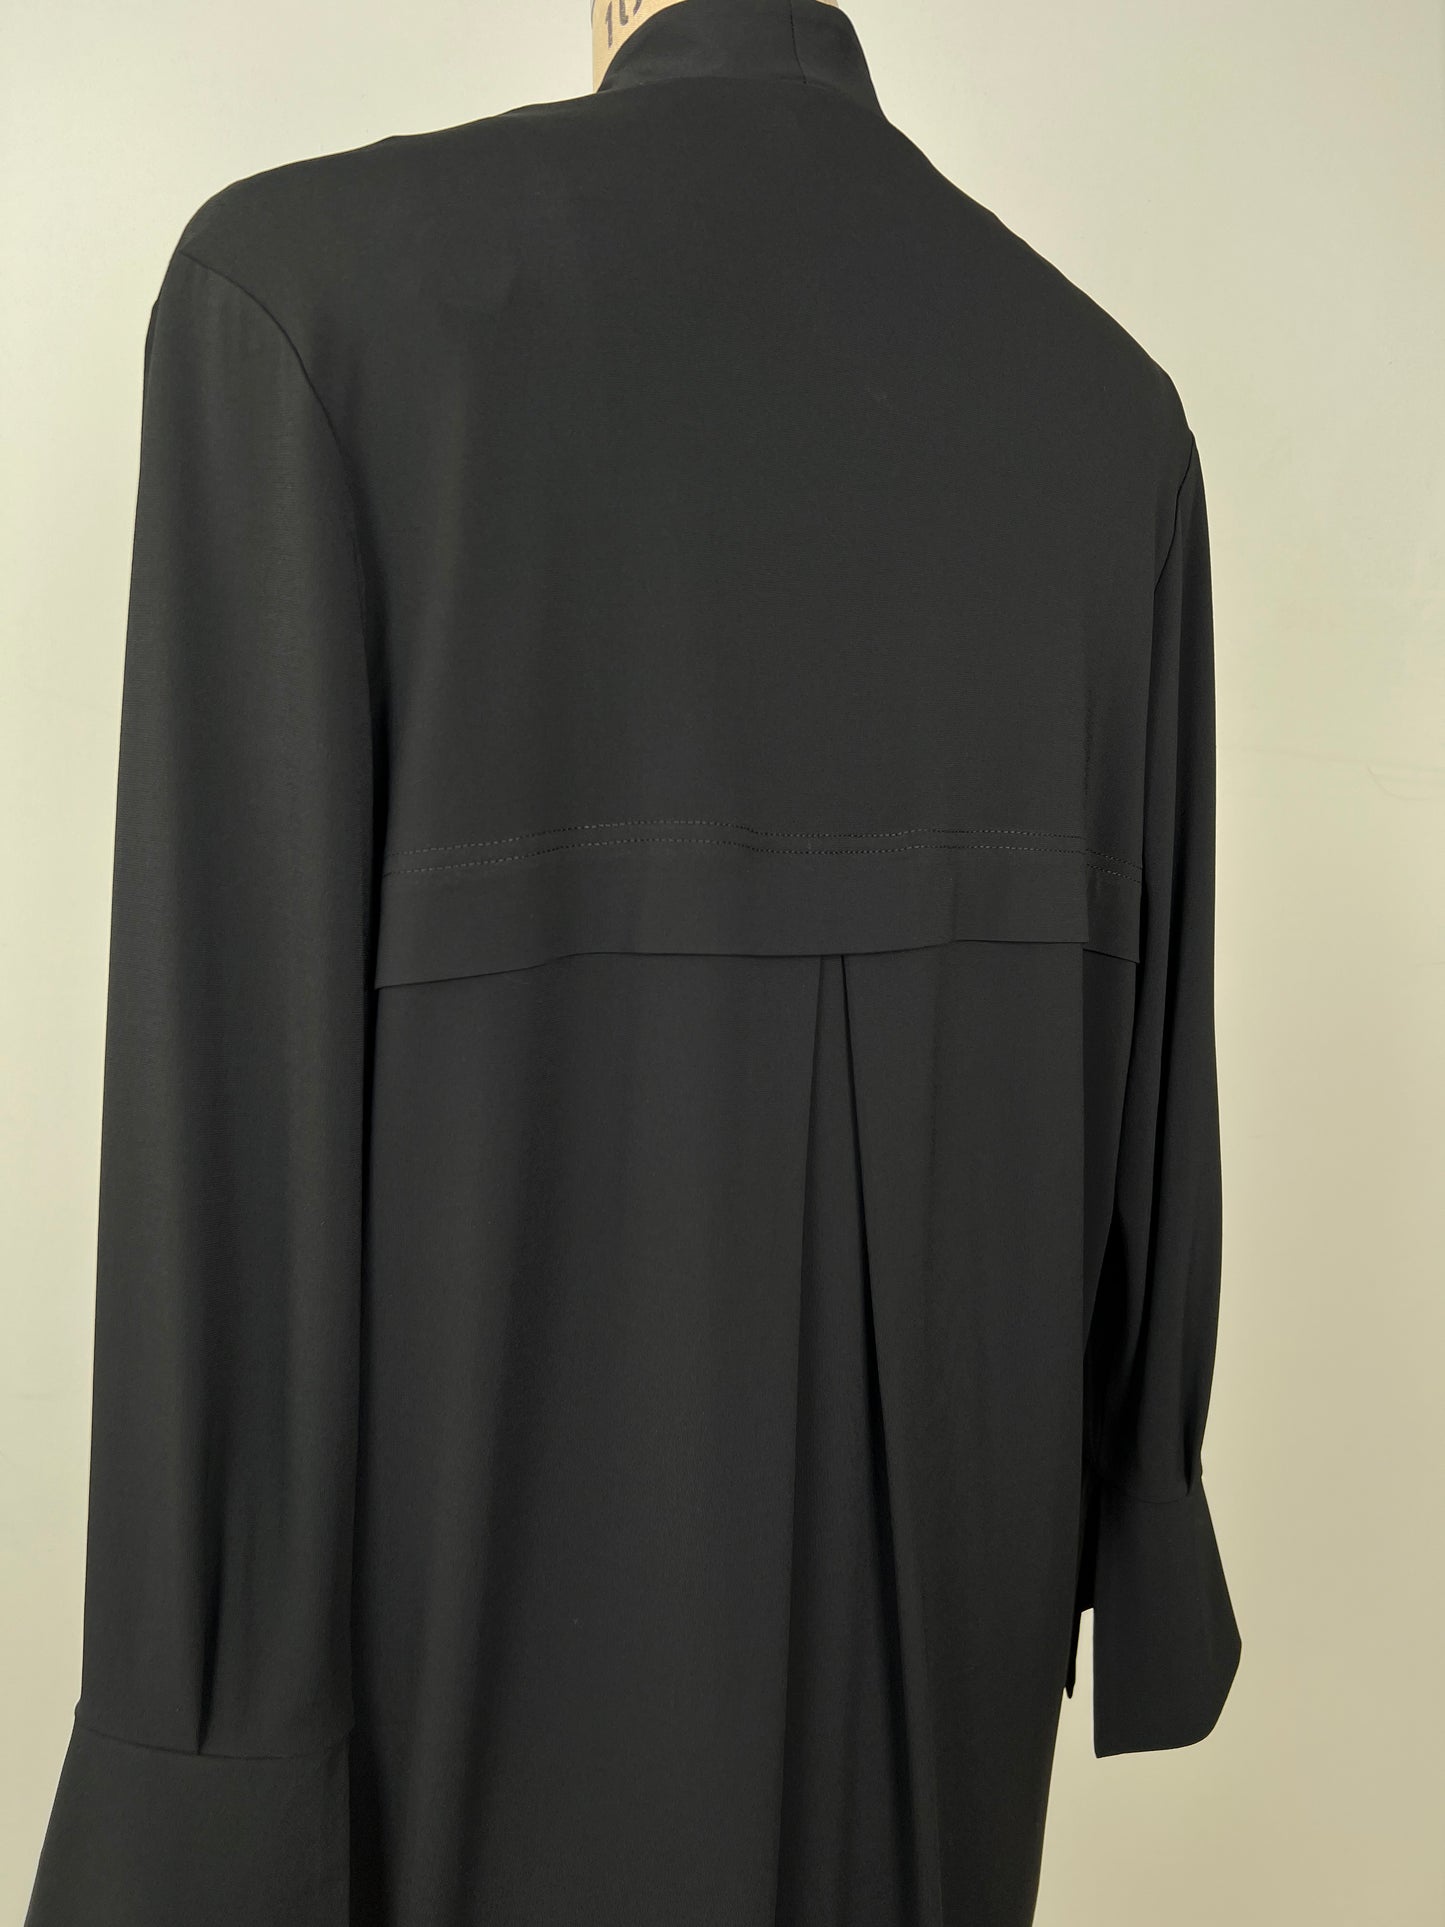 Veste en microfibre noire à encolure kimono (S)